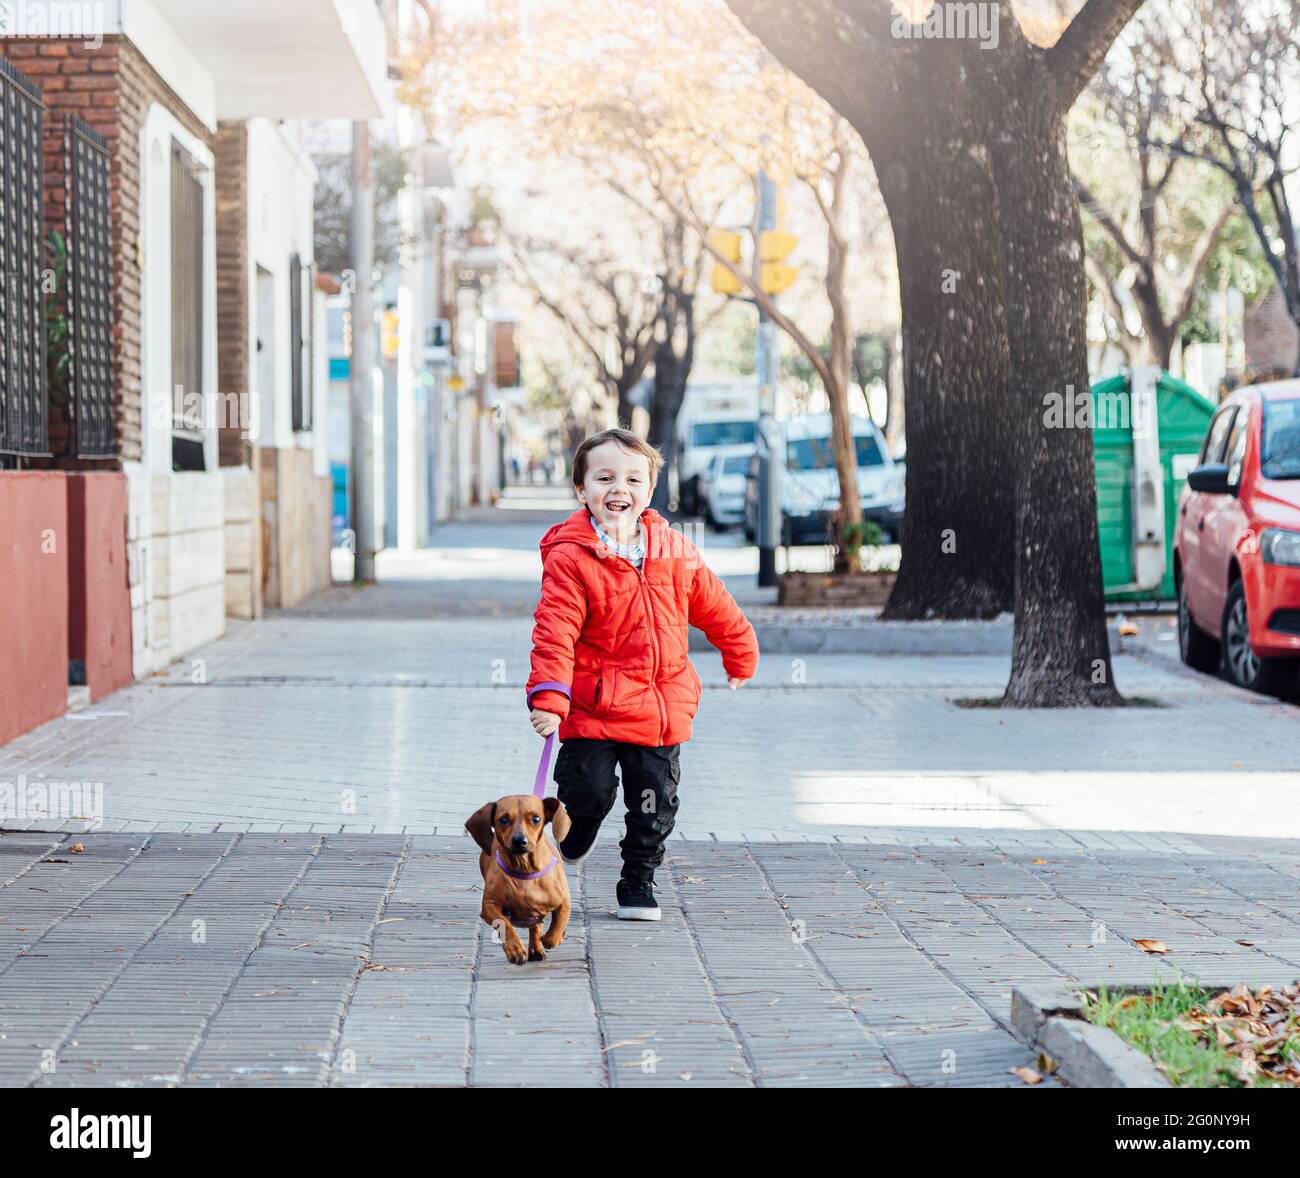 Glücklicher kleiner Junge, der mit seinem Dackel-Hund auf einem Bürgersteig in der Stadt läuft. Stockfoto